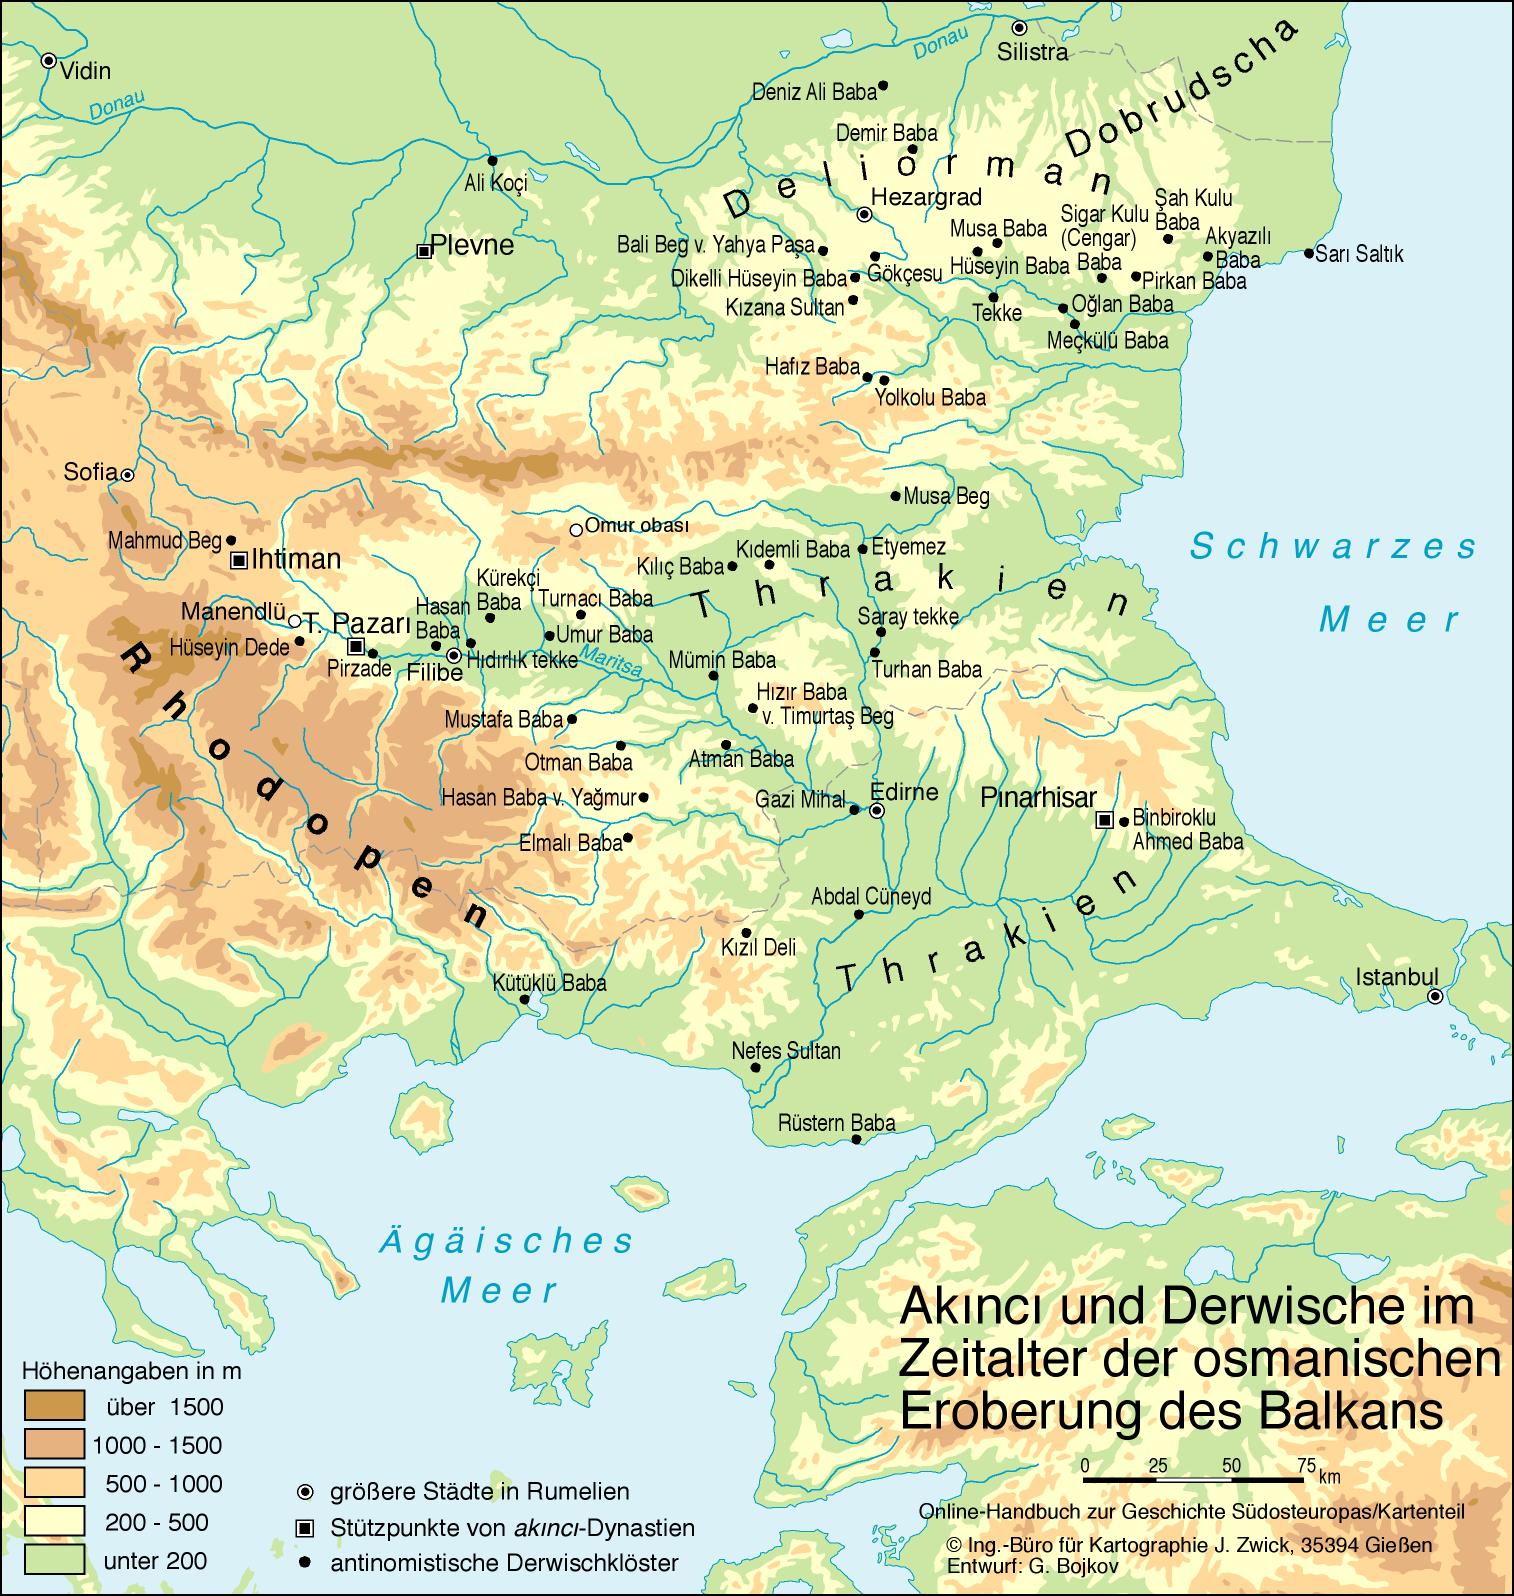 Akıncı und Derwische im Zeitalter der osmanischen Eroberung des Balkans